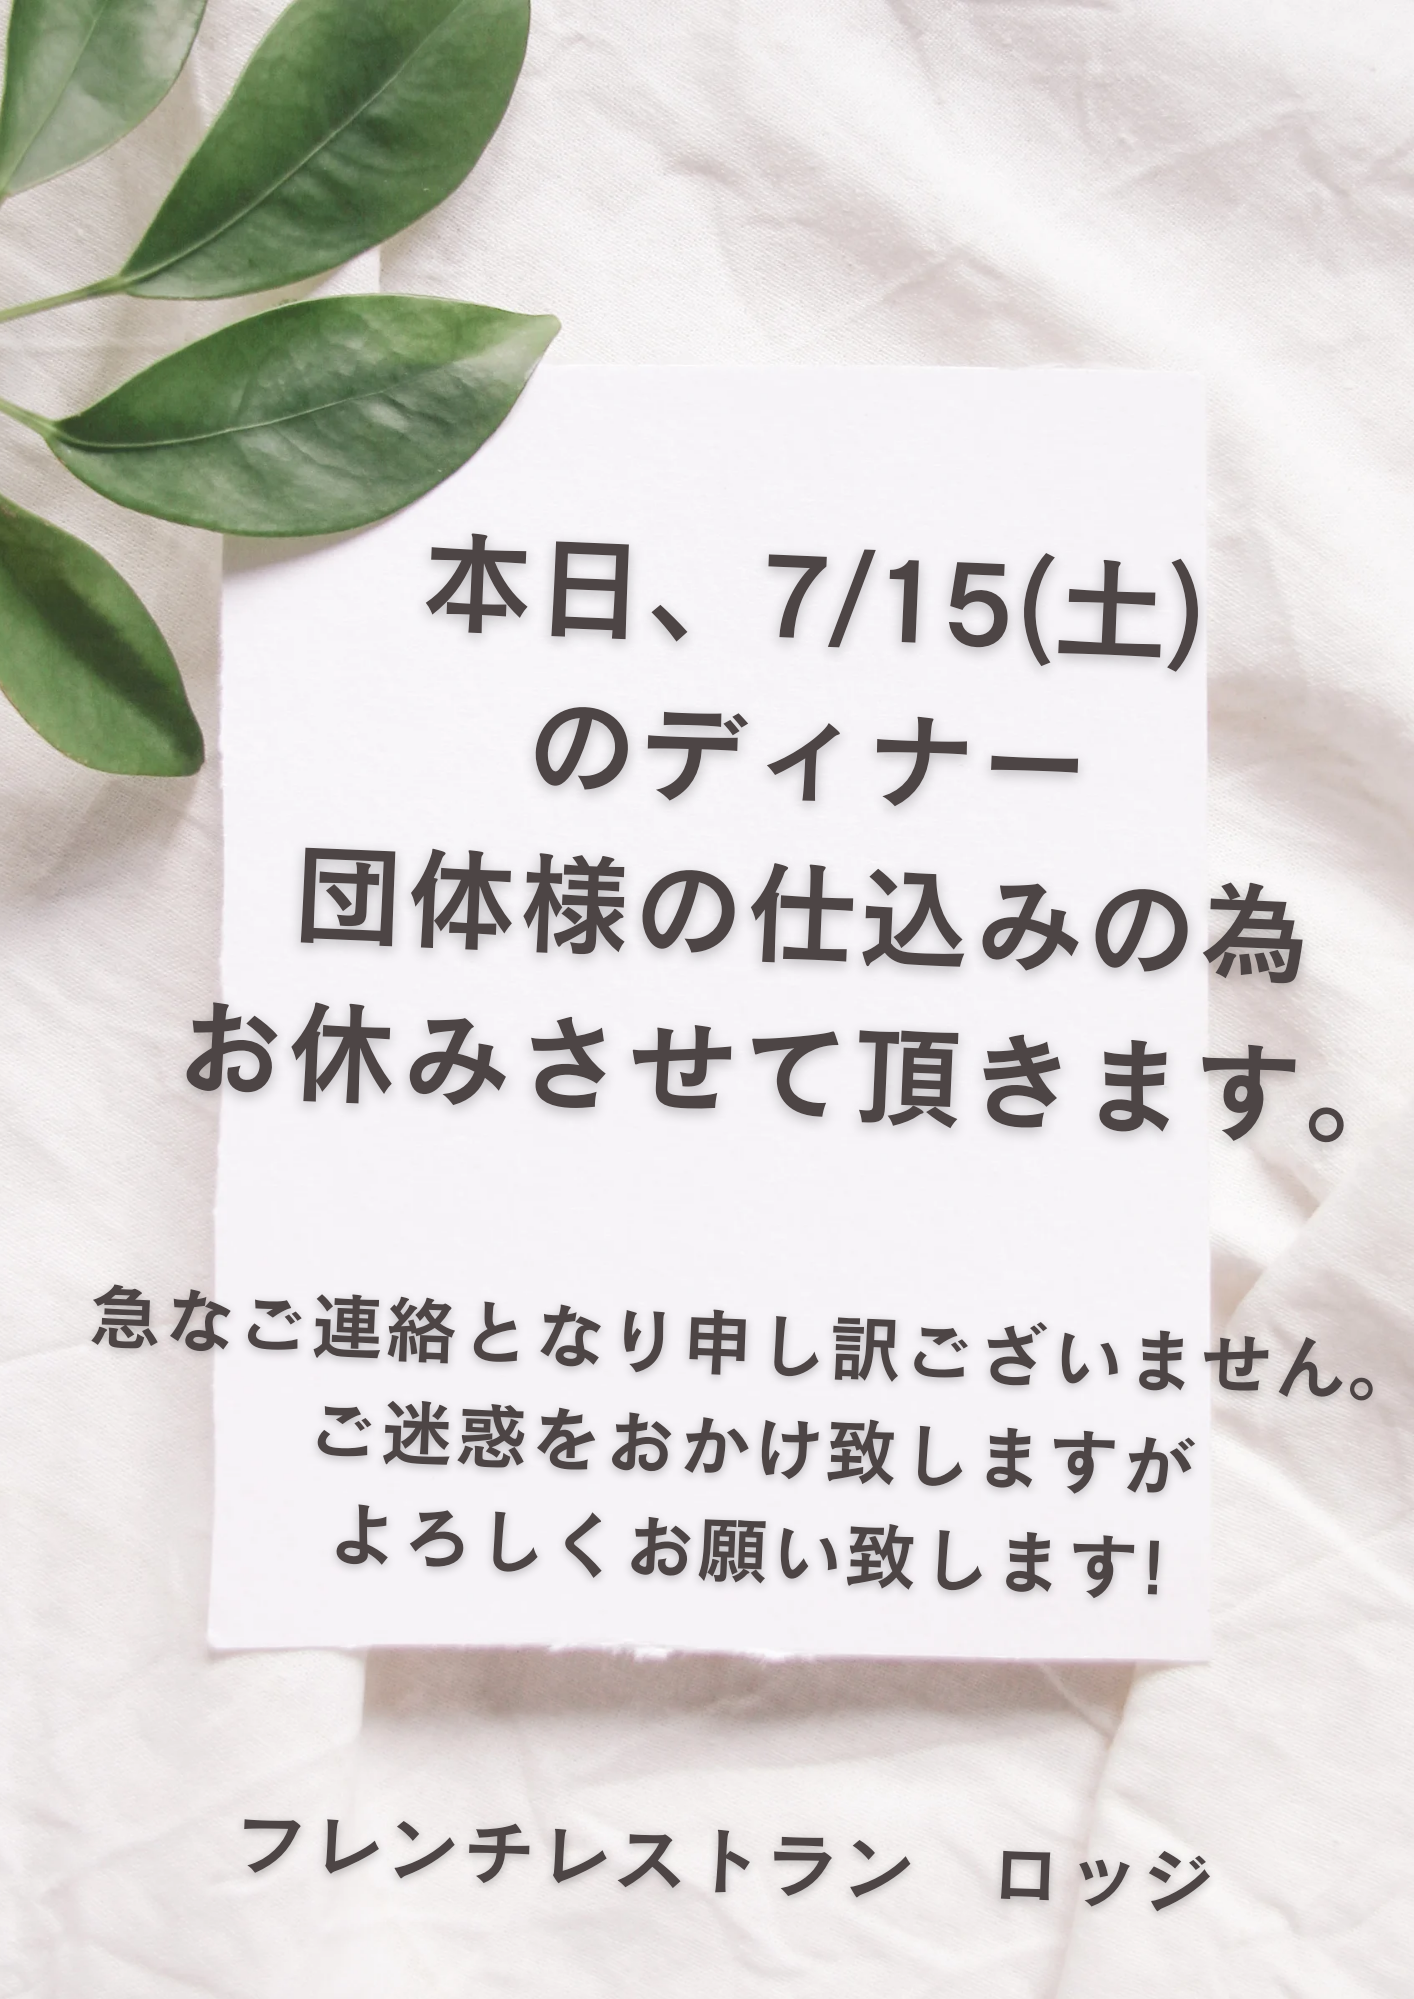 7/15(土)ディナーお休みのお知らせ